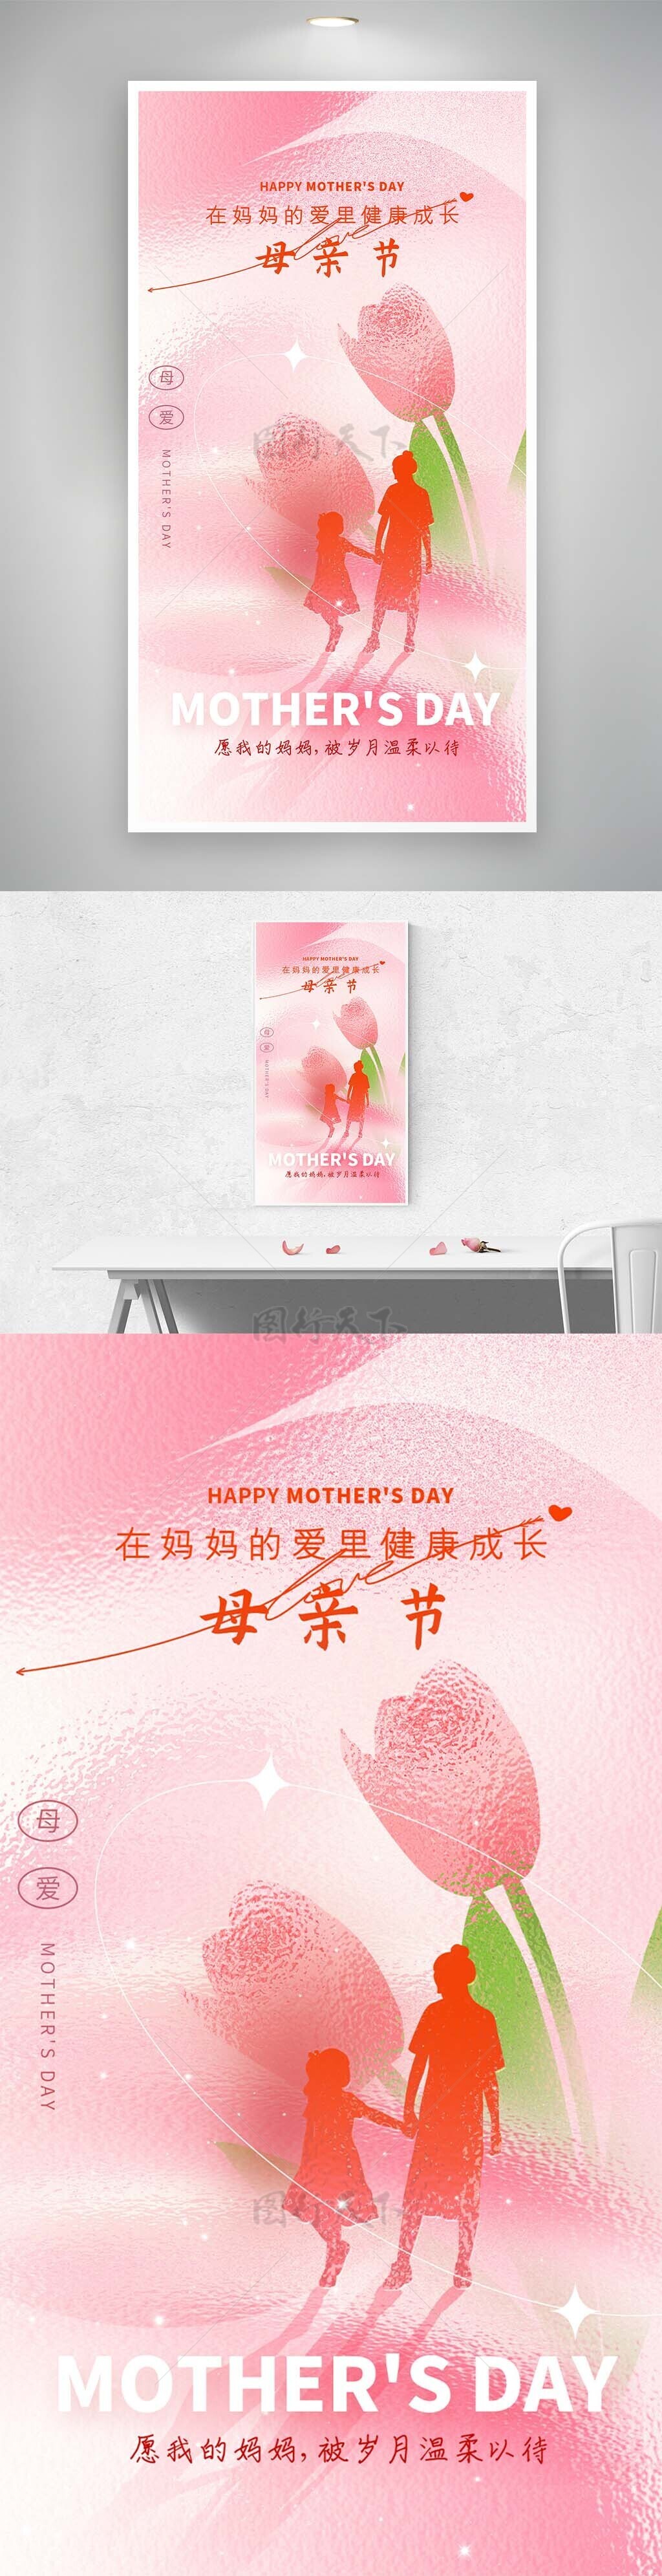 在妈妈的爱里健康成长母亲节人物投影粉色海报